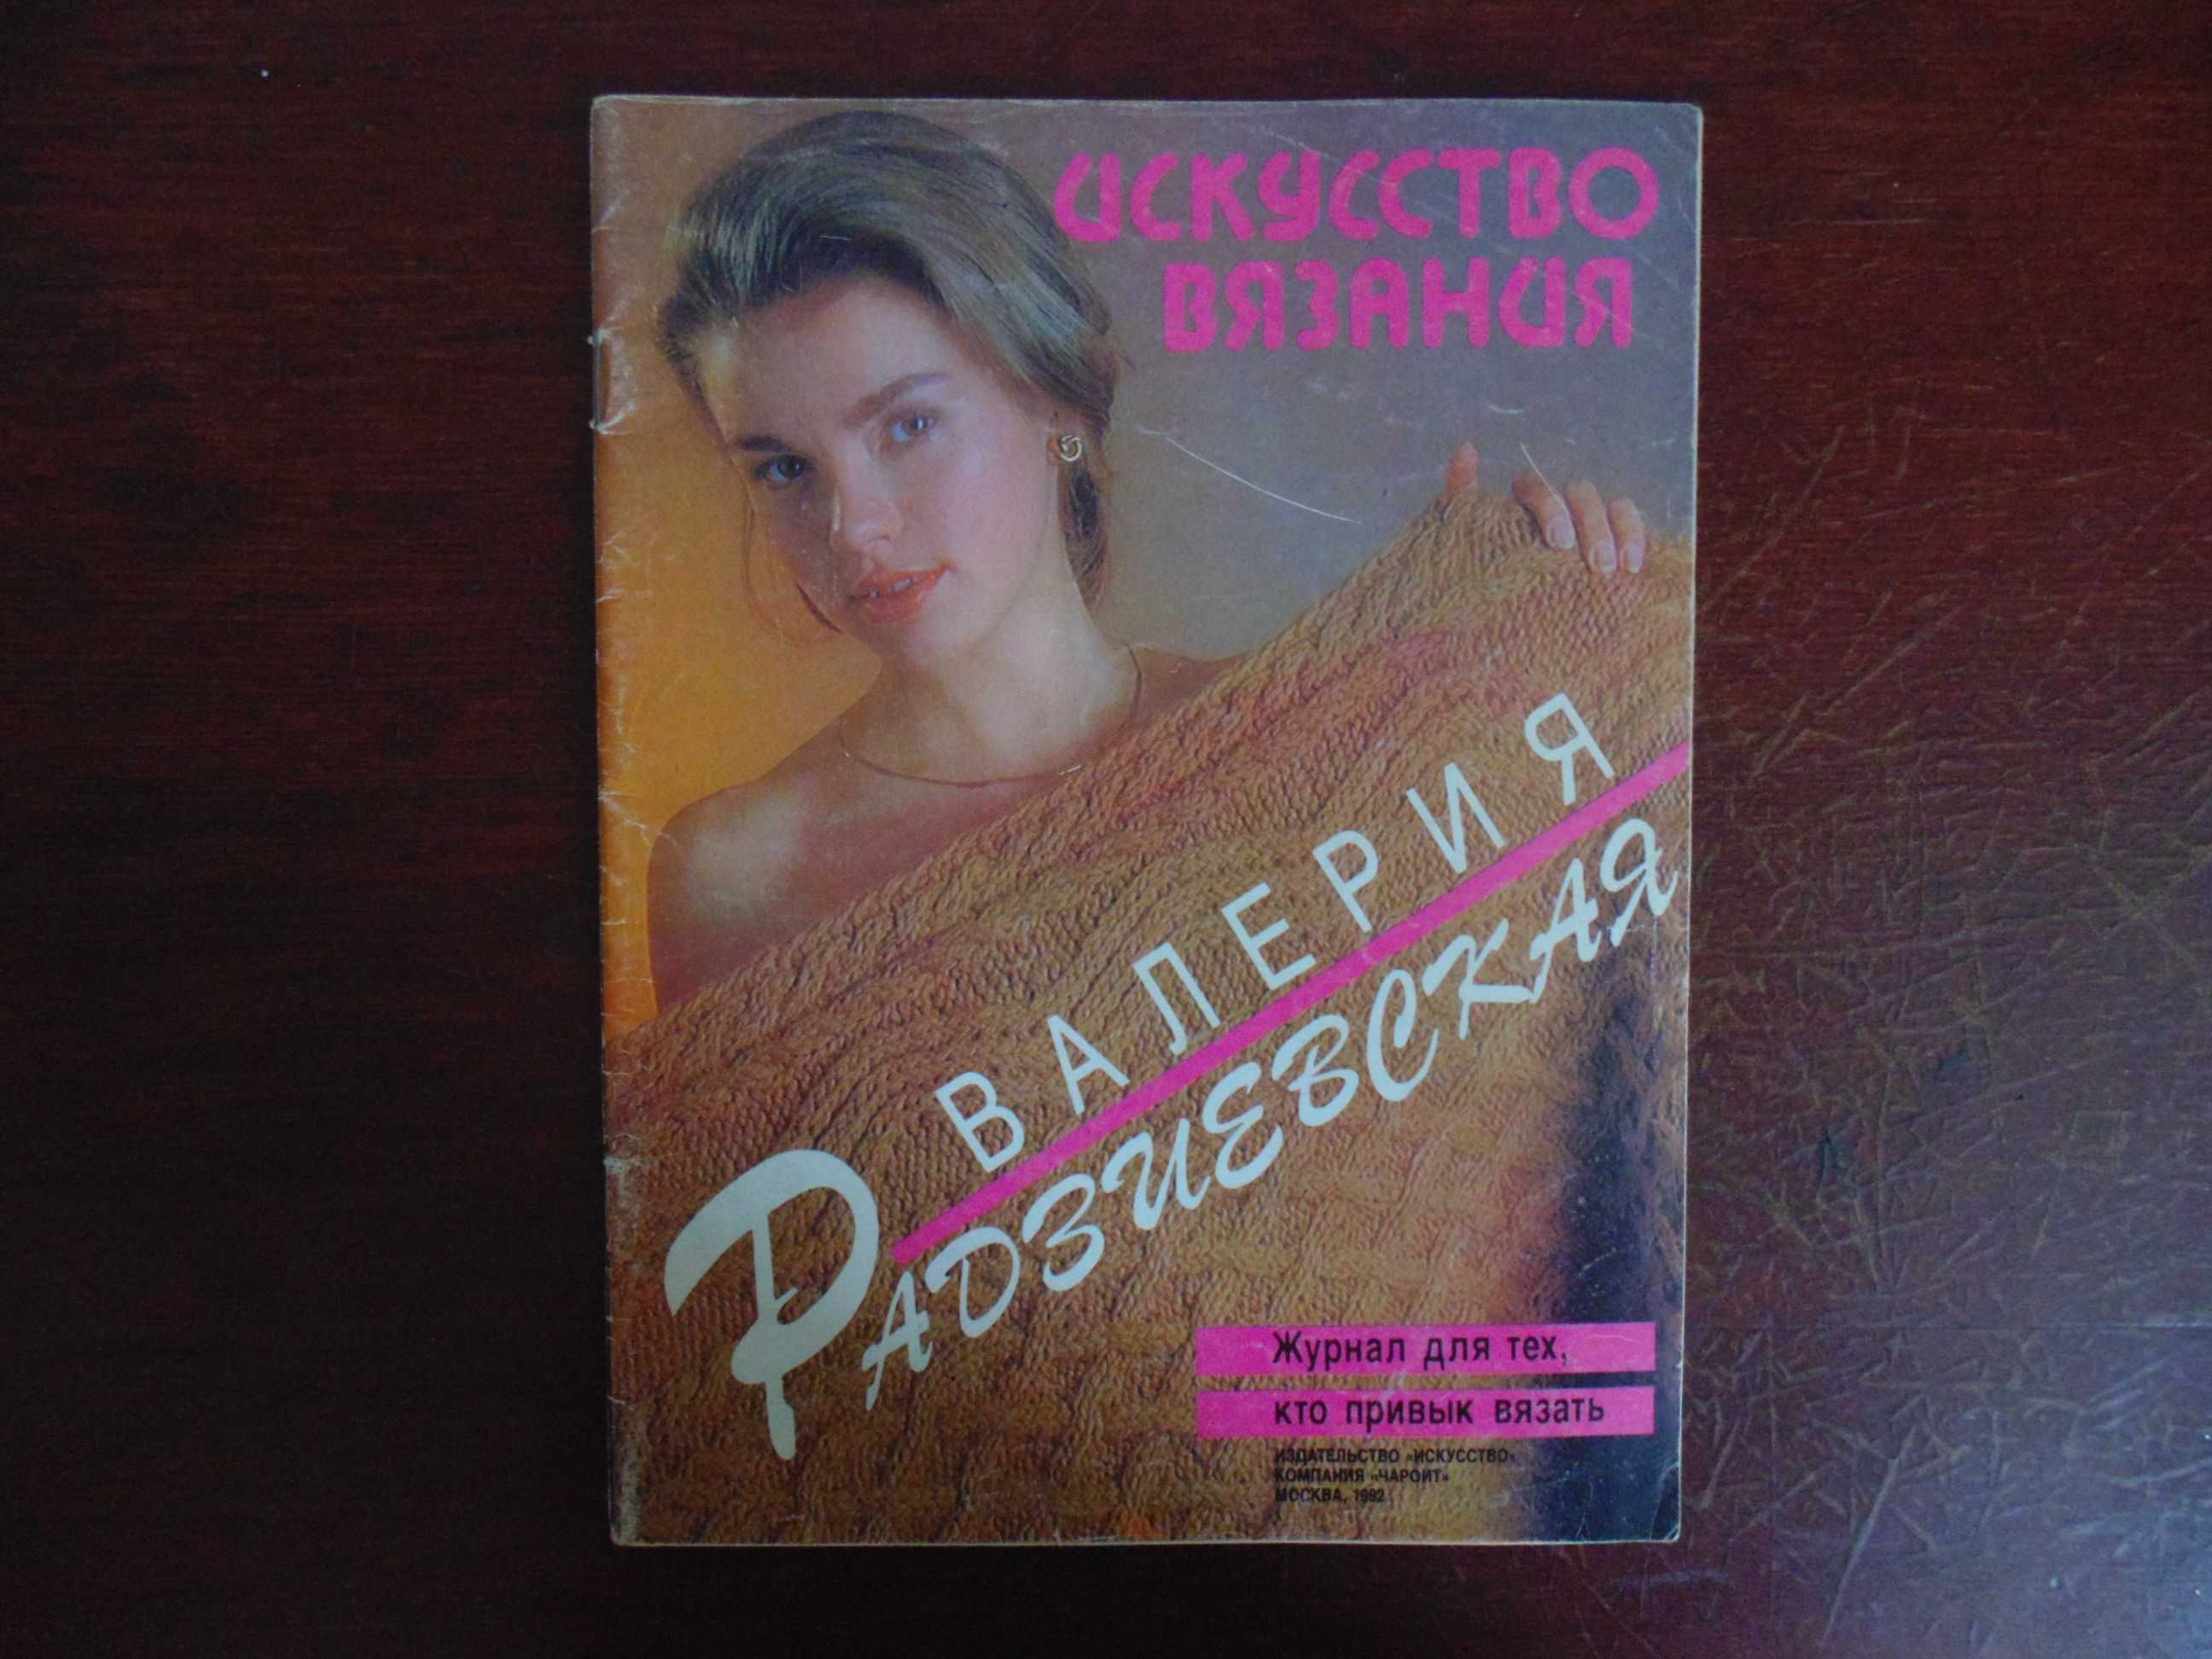 Журнал "Искусство вязания" Валерия Радзиевская.